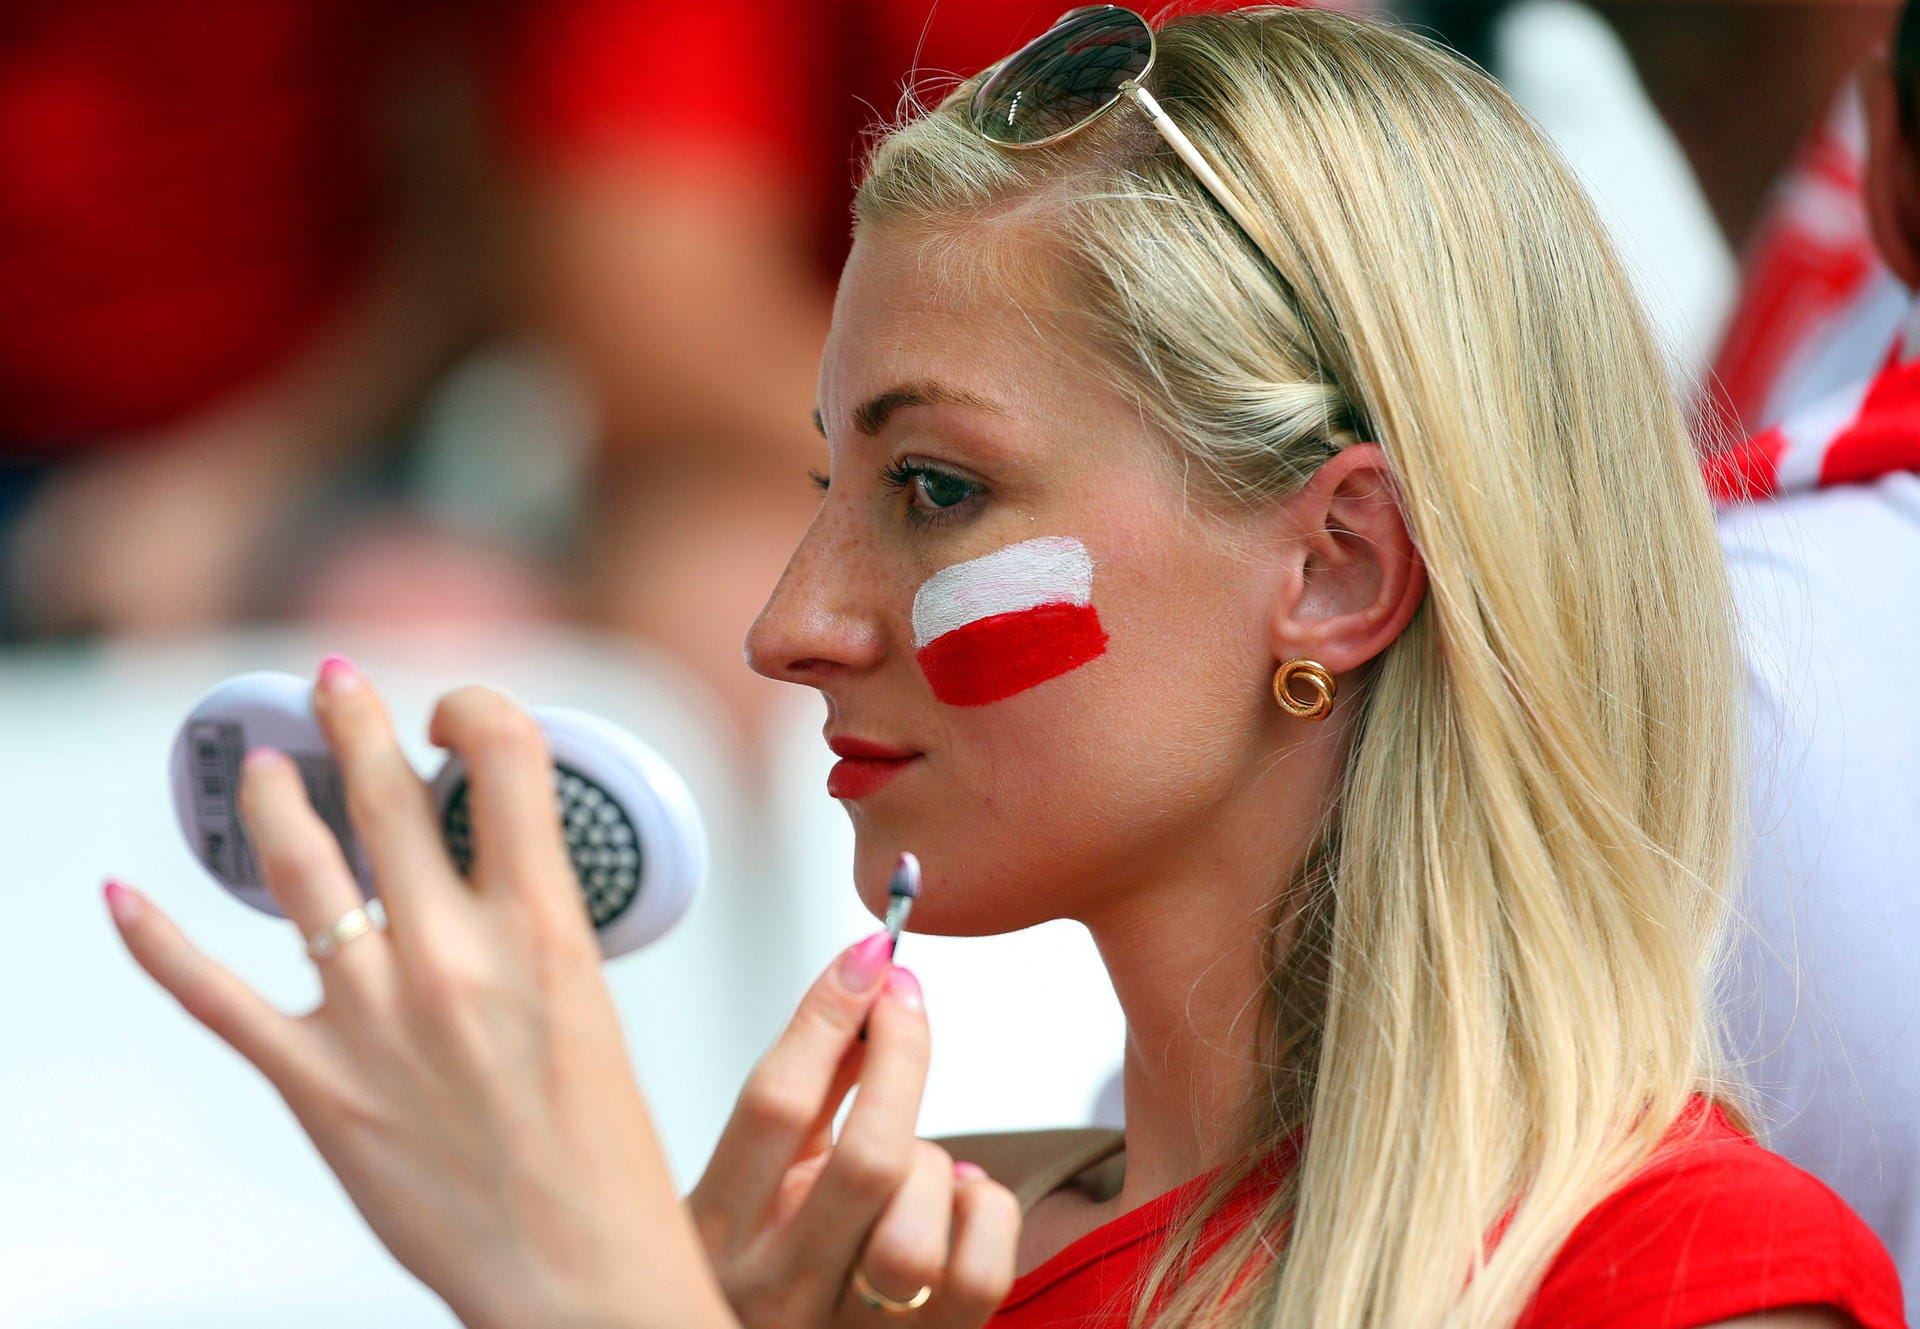 Farbenspiel: Dieser polnische Fan legt sich vor dem Anpfiff nicht nur ein bisschen "Rouge" auf.